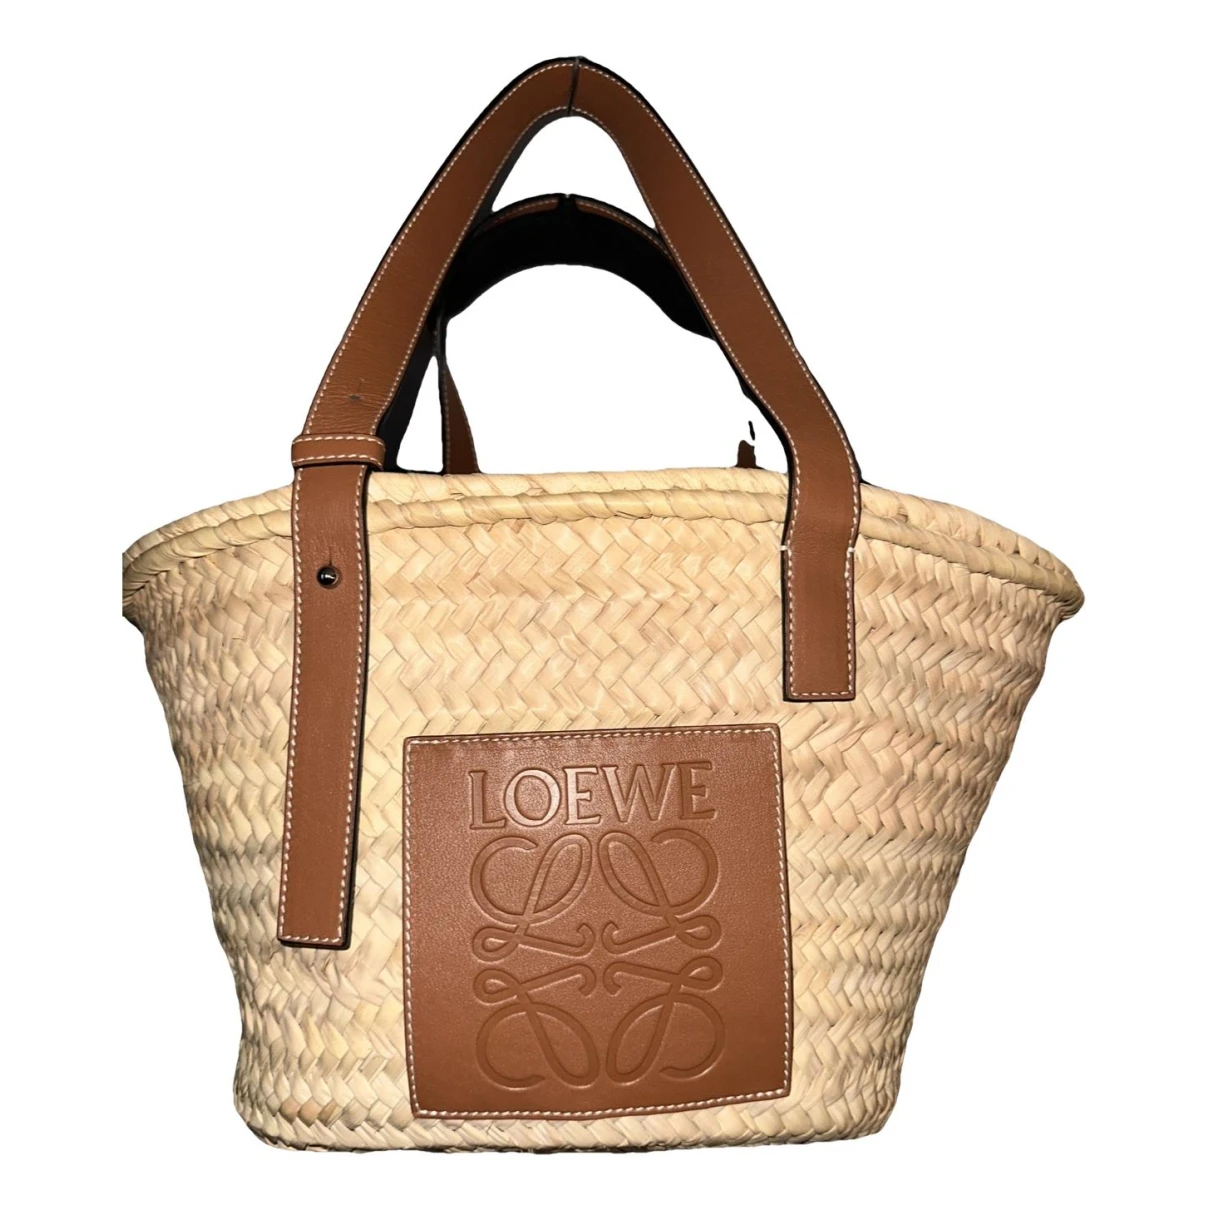 Pre-owned Loewe Basket Bag Pony-style Calfskin Tote In Brown